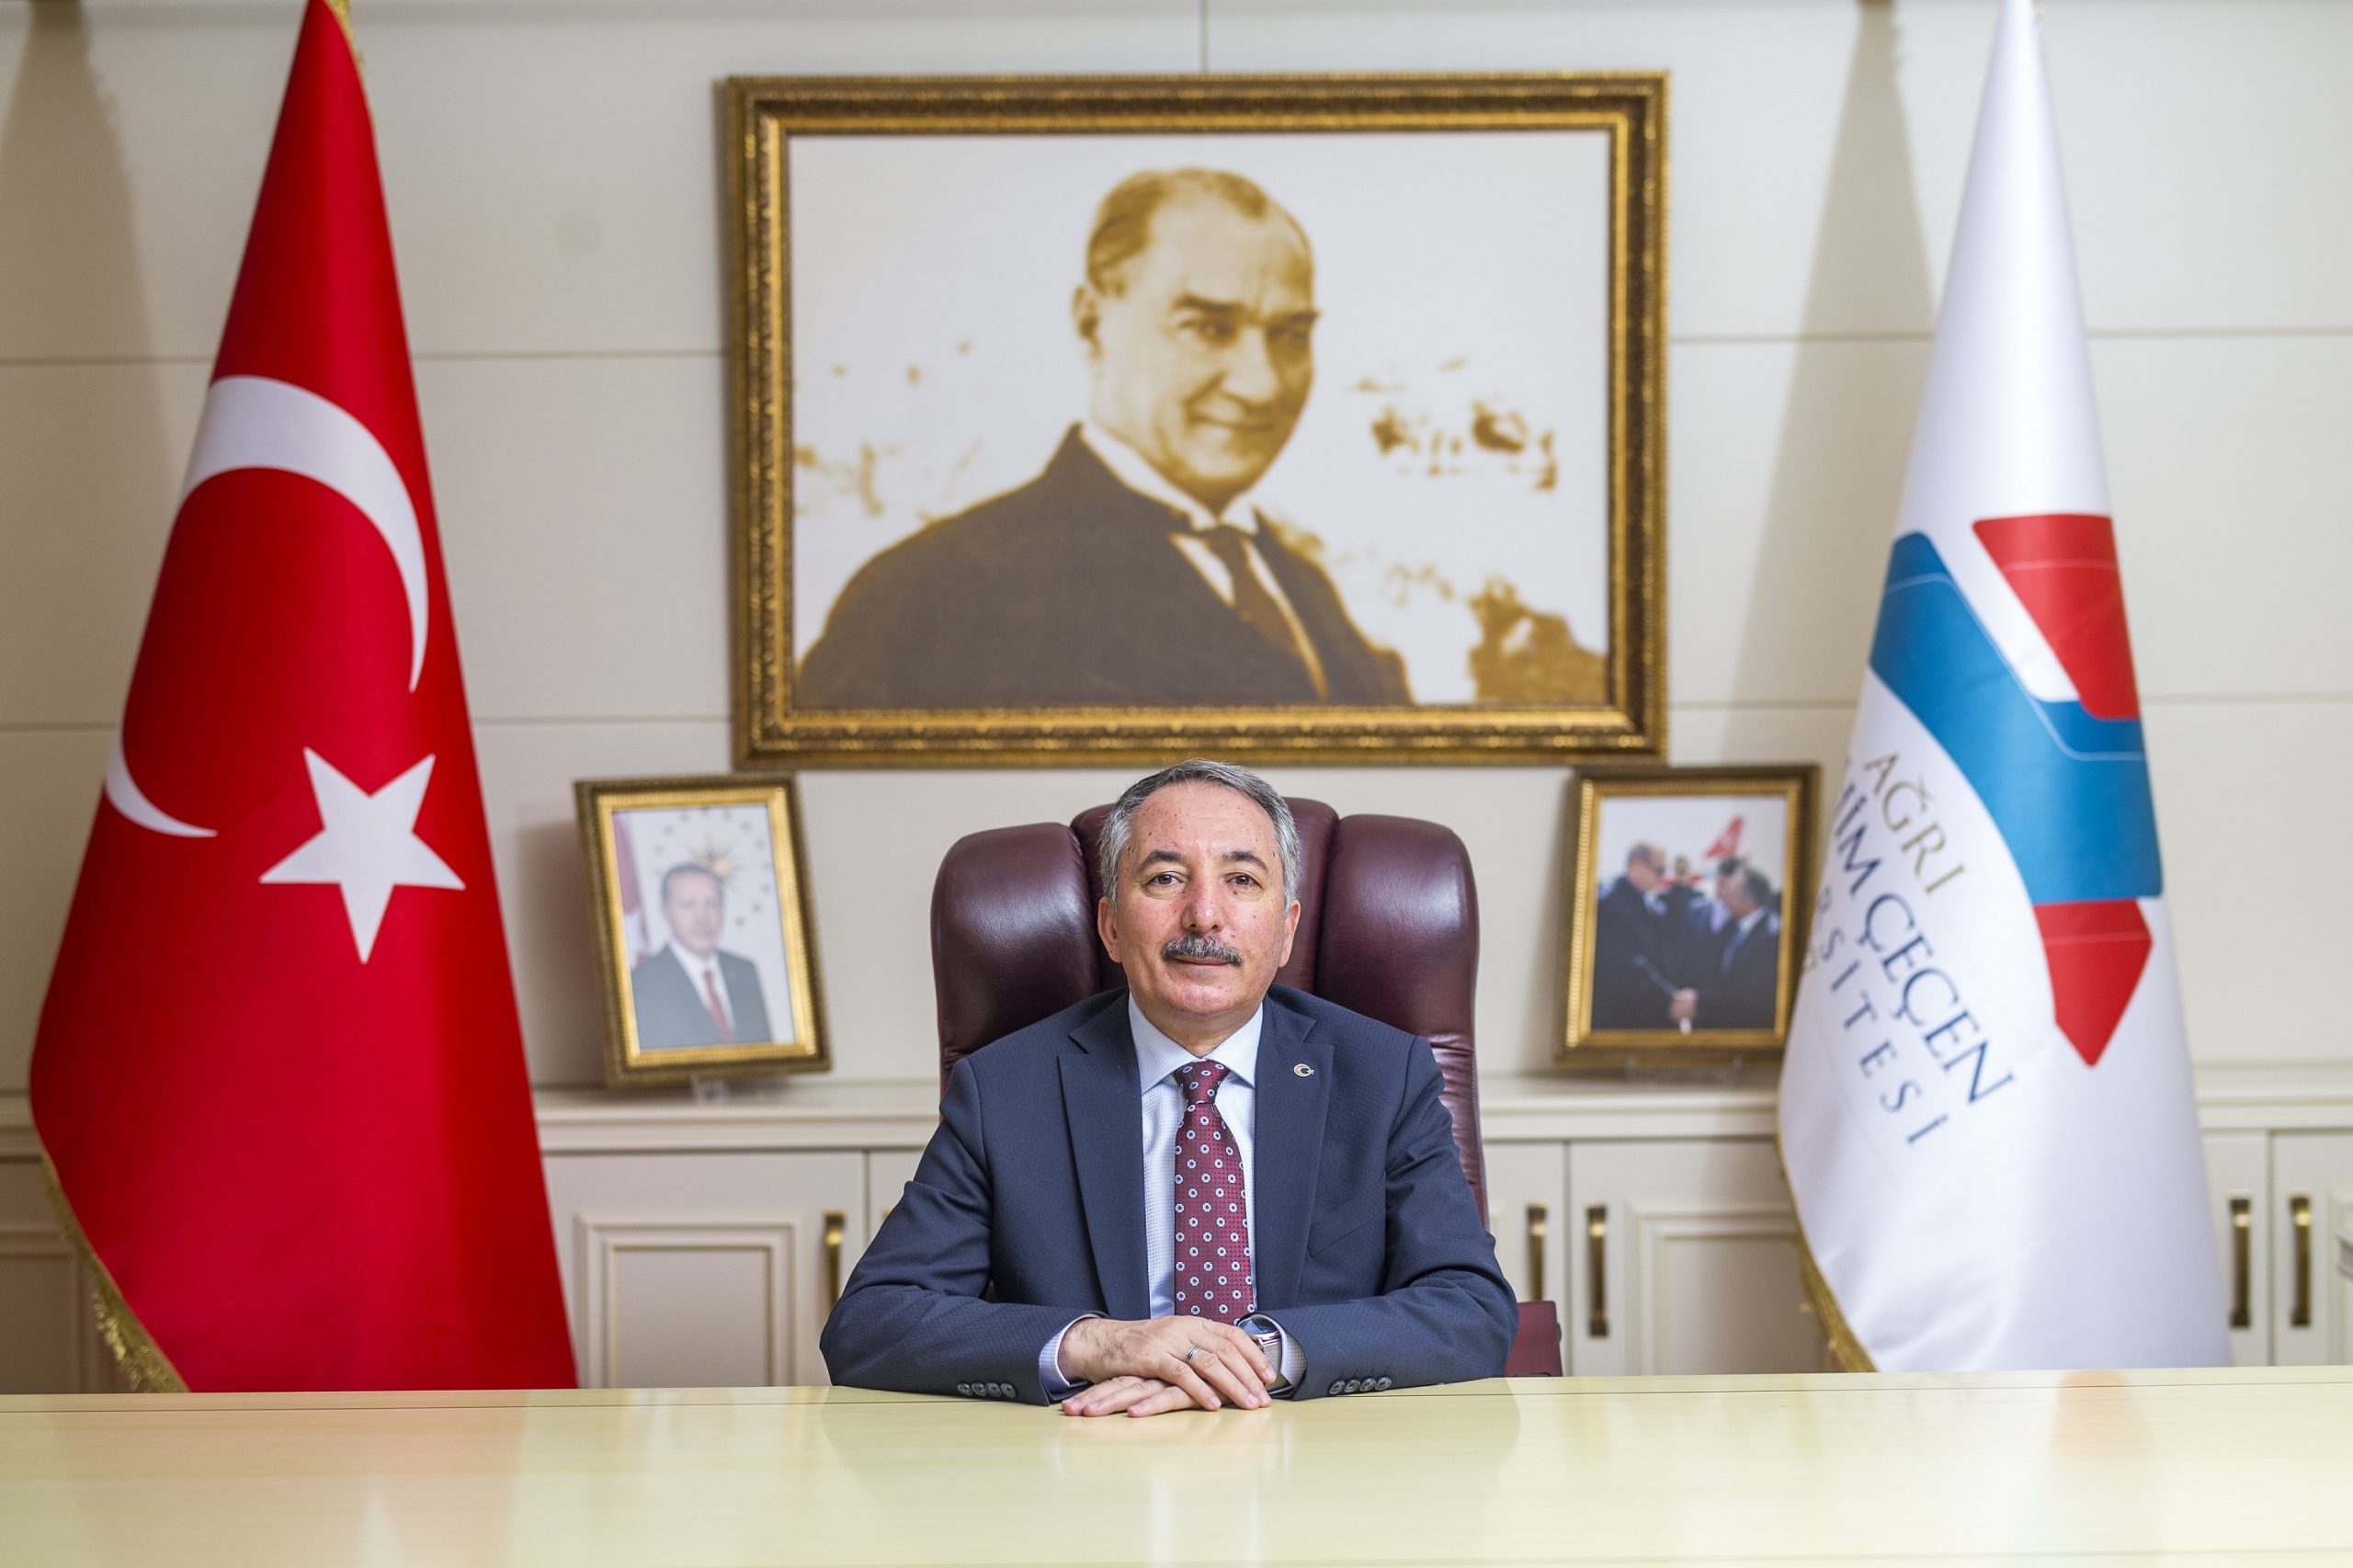 AİÇÜ Rektörü Prof. Dr. Abdulhalik Karabulut’un 10 Kasım Atatürk’ü Anma Mesajı